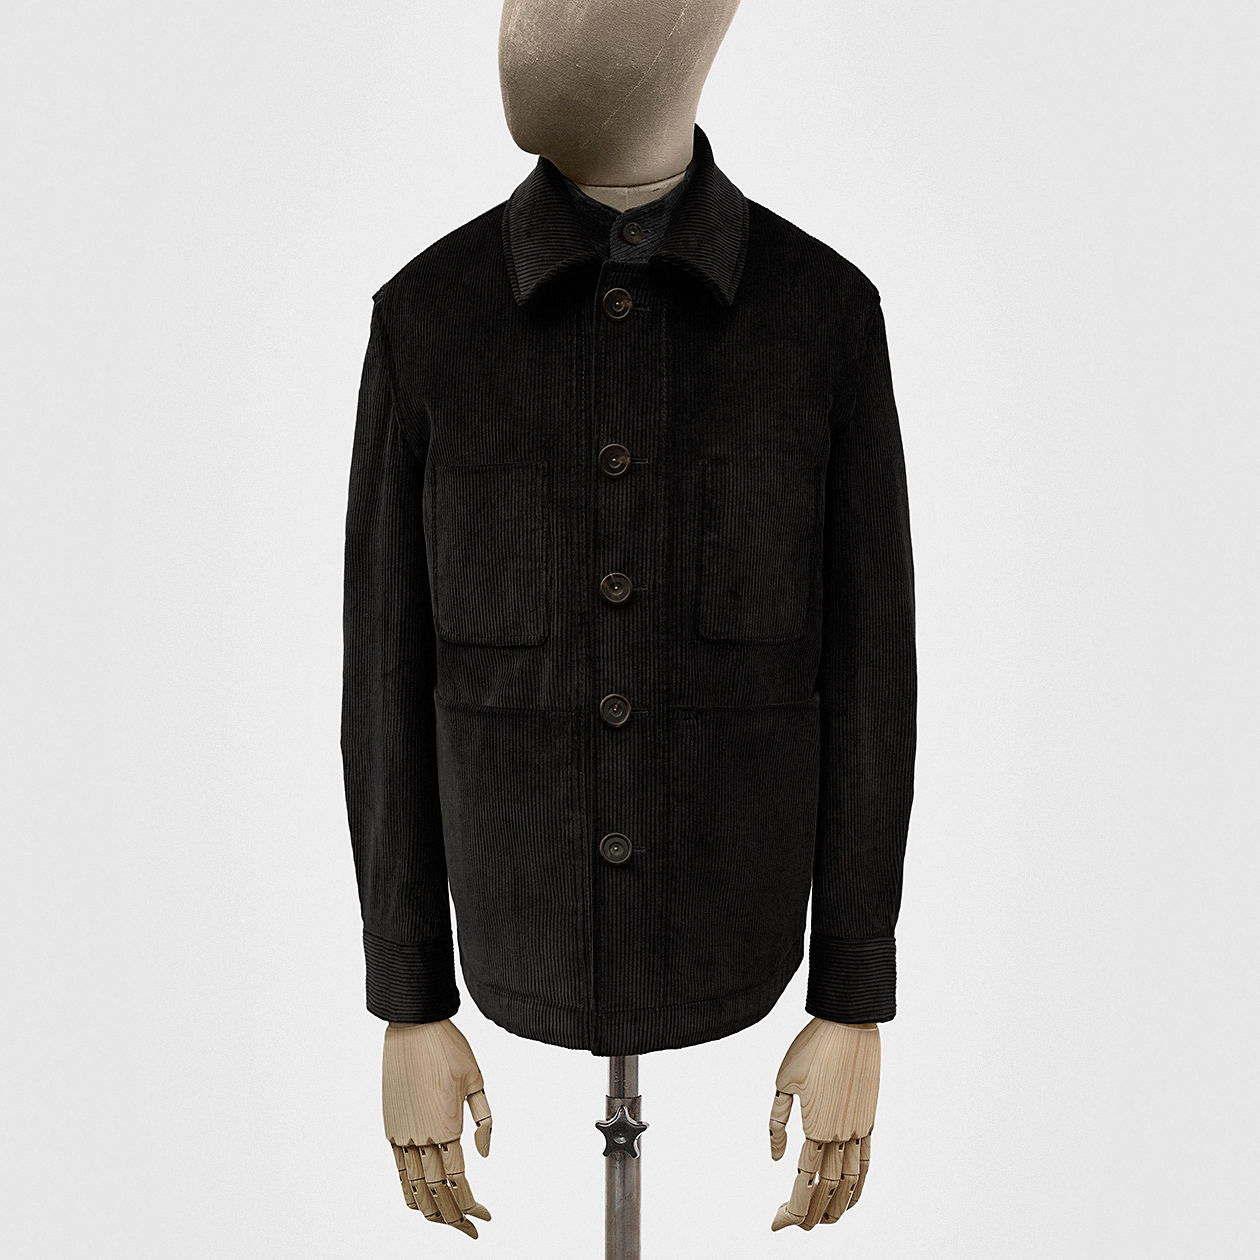 Work jacket in heavy corduroy in black — S.E.H Kelly